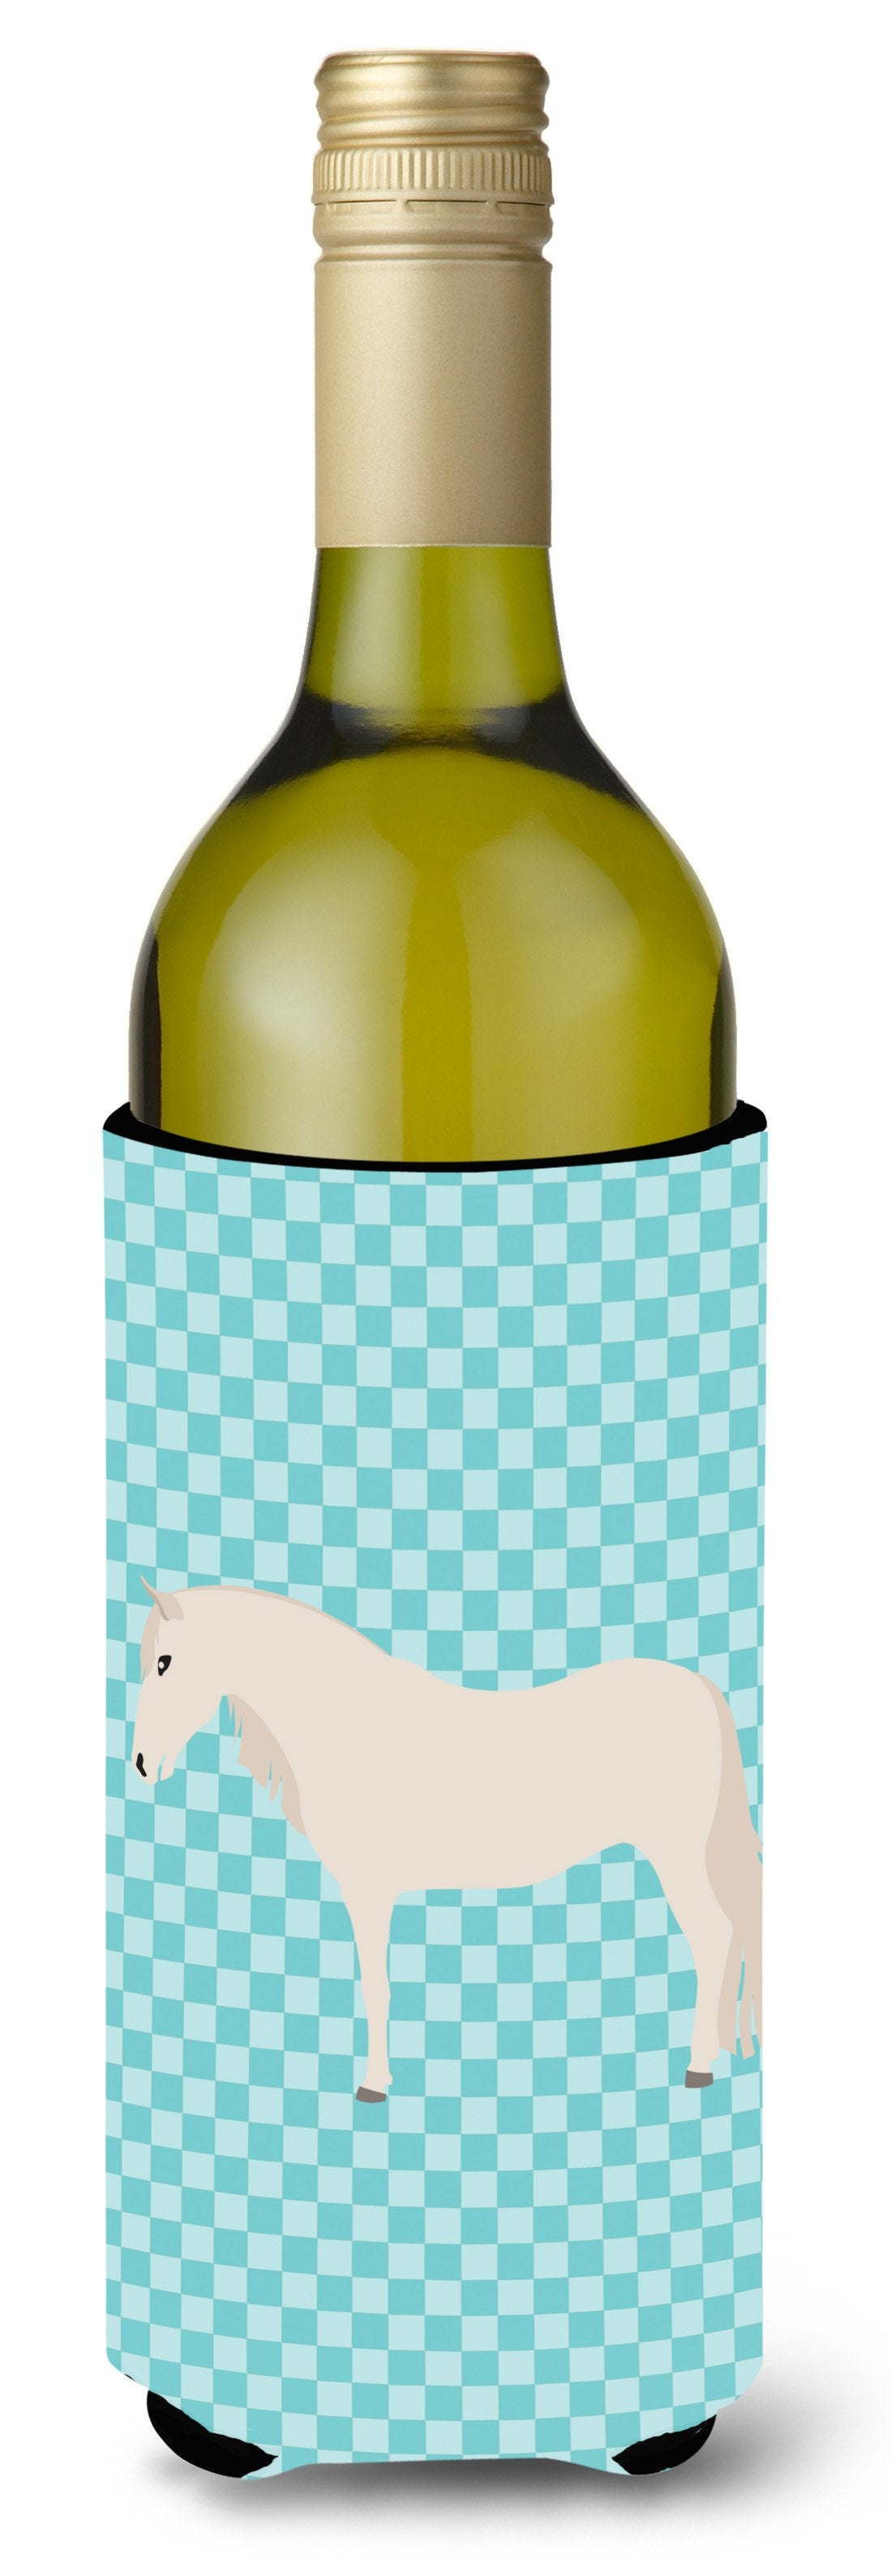 Paso Fino Horse Blue Check Wine Bottle Beverge Insulator Hugger BB8079LITERK by Caroline's Treasures